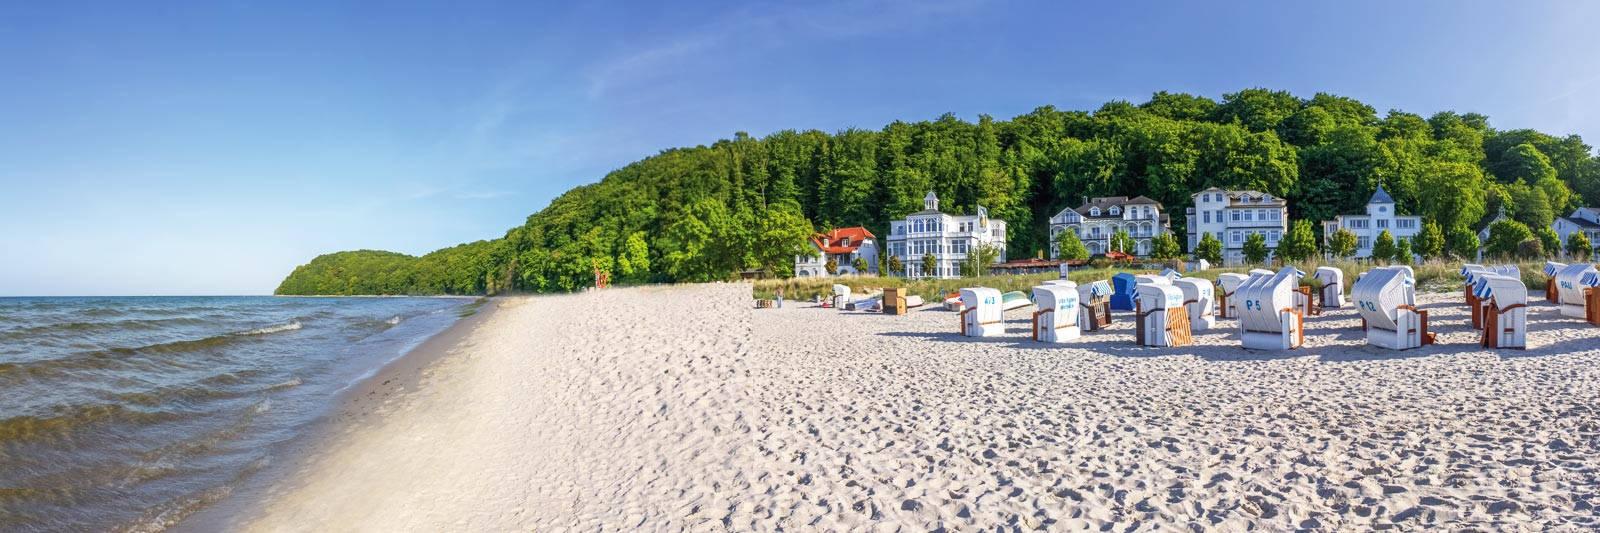 727 Ferienwohnungen und Ferienhäuser auf Poel - tourist-online.de